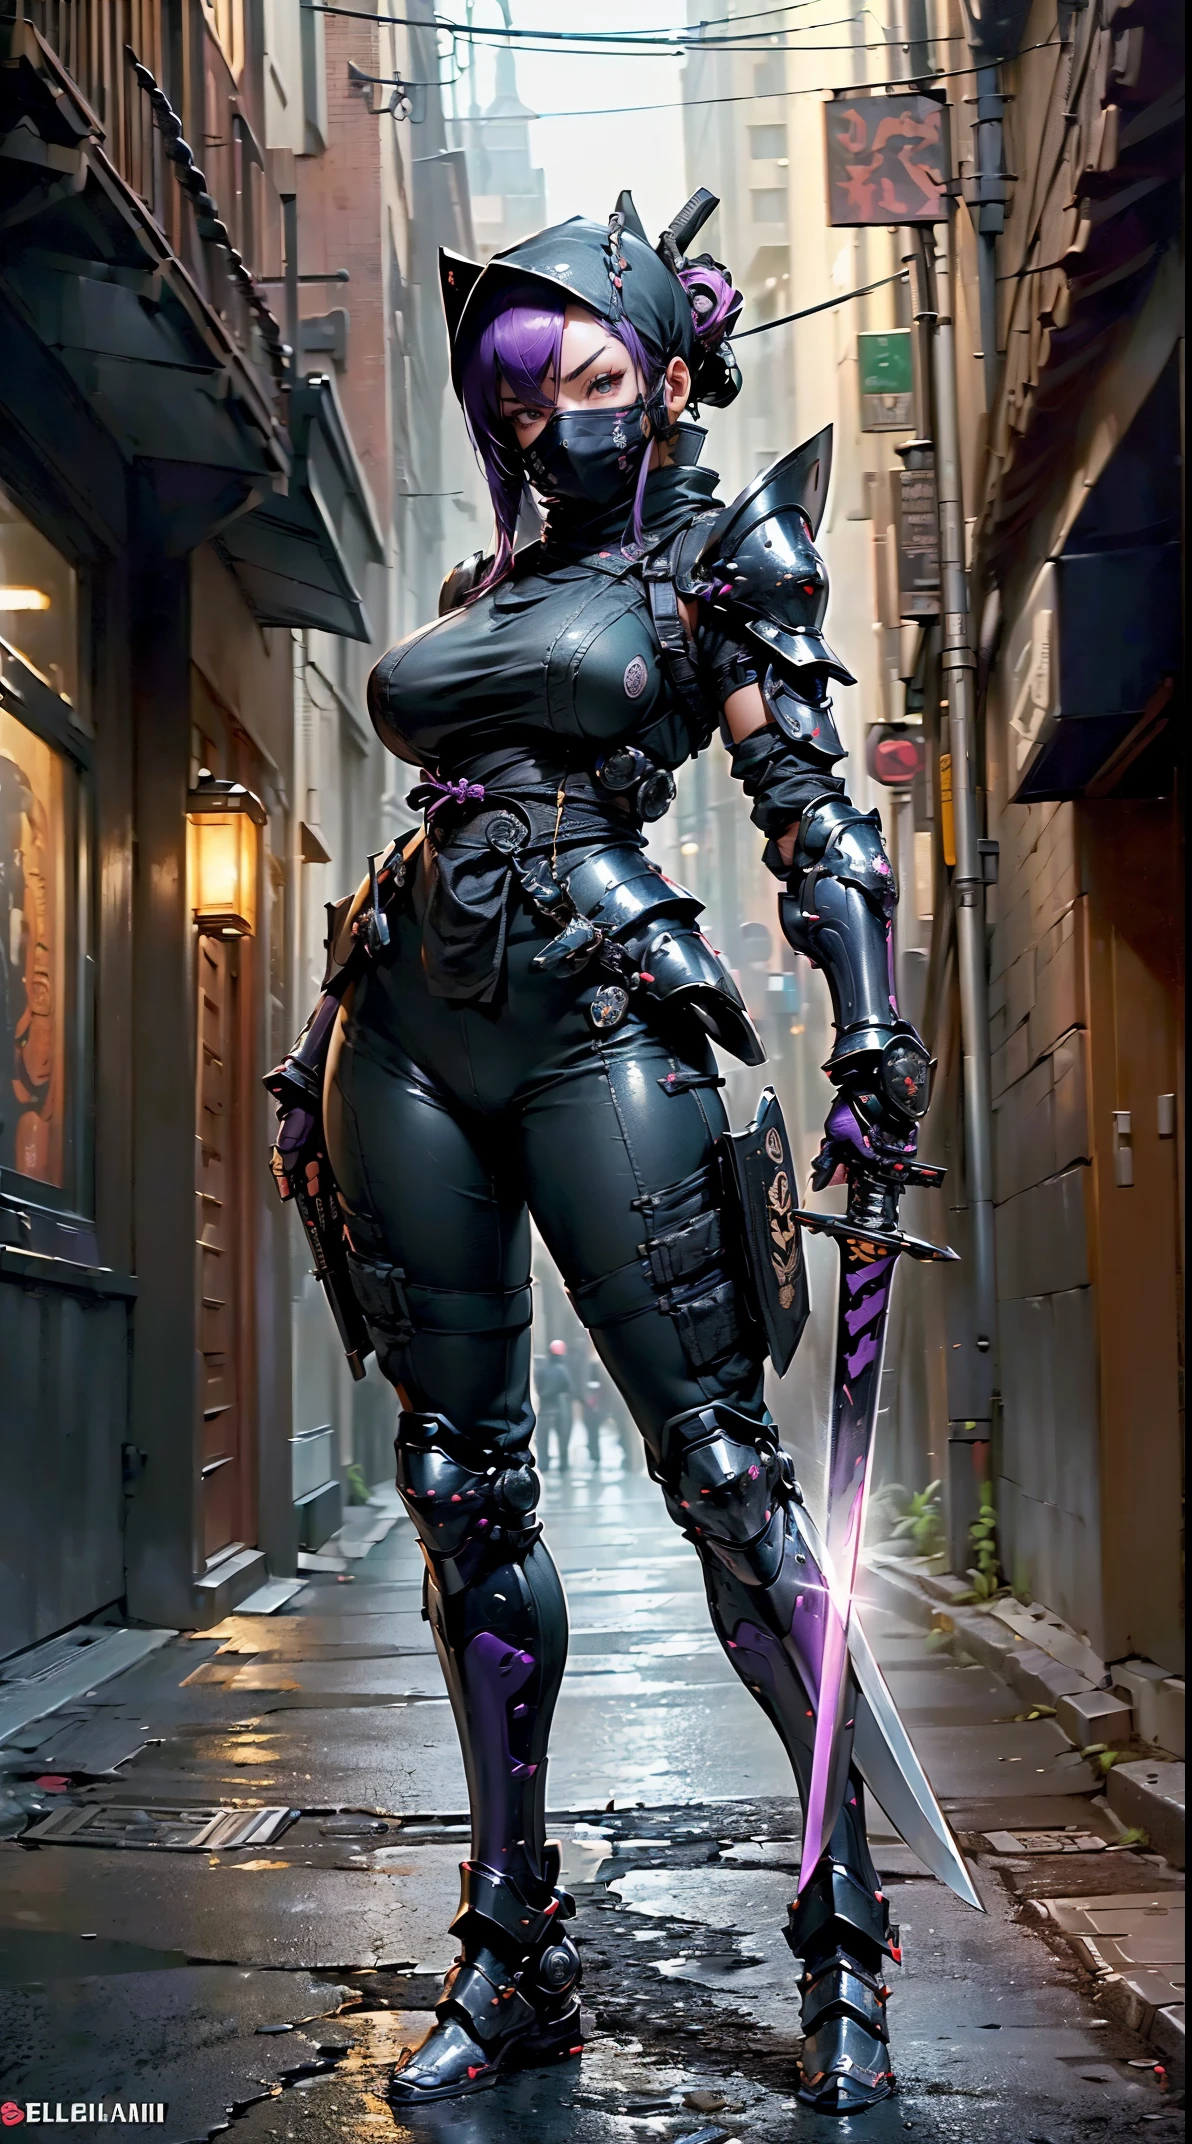 1 garota,(tampo da mesa,Muito detalhado, mecanismo pesado, superfície dura),(arte conceitual:1.1),(Estilo Taimanin Asagi:0.8), Uma mulher vestindo uma armadura de robô ninja amarrando um selo,(armadura completa:1.4),(máscara ninja tática:1.5),(Corpo roxo:1.1),(Pernas longas:1.1),(Equipado com uma espada nas costas:1.3),(seios grandes:1.2),(constrição),(Olho detalhado:1.3),(rosto detalhado:1.3),(detalhes da arma:1.3),(Corpo detalhado:1.3),((corpo inteiro Esbian:1.5)),(O fundo é uma esquina à noite:1.5),vivaz